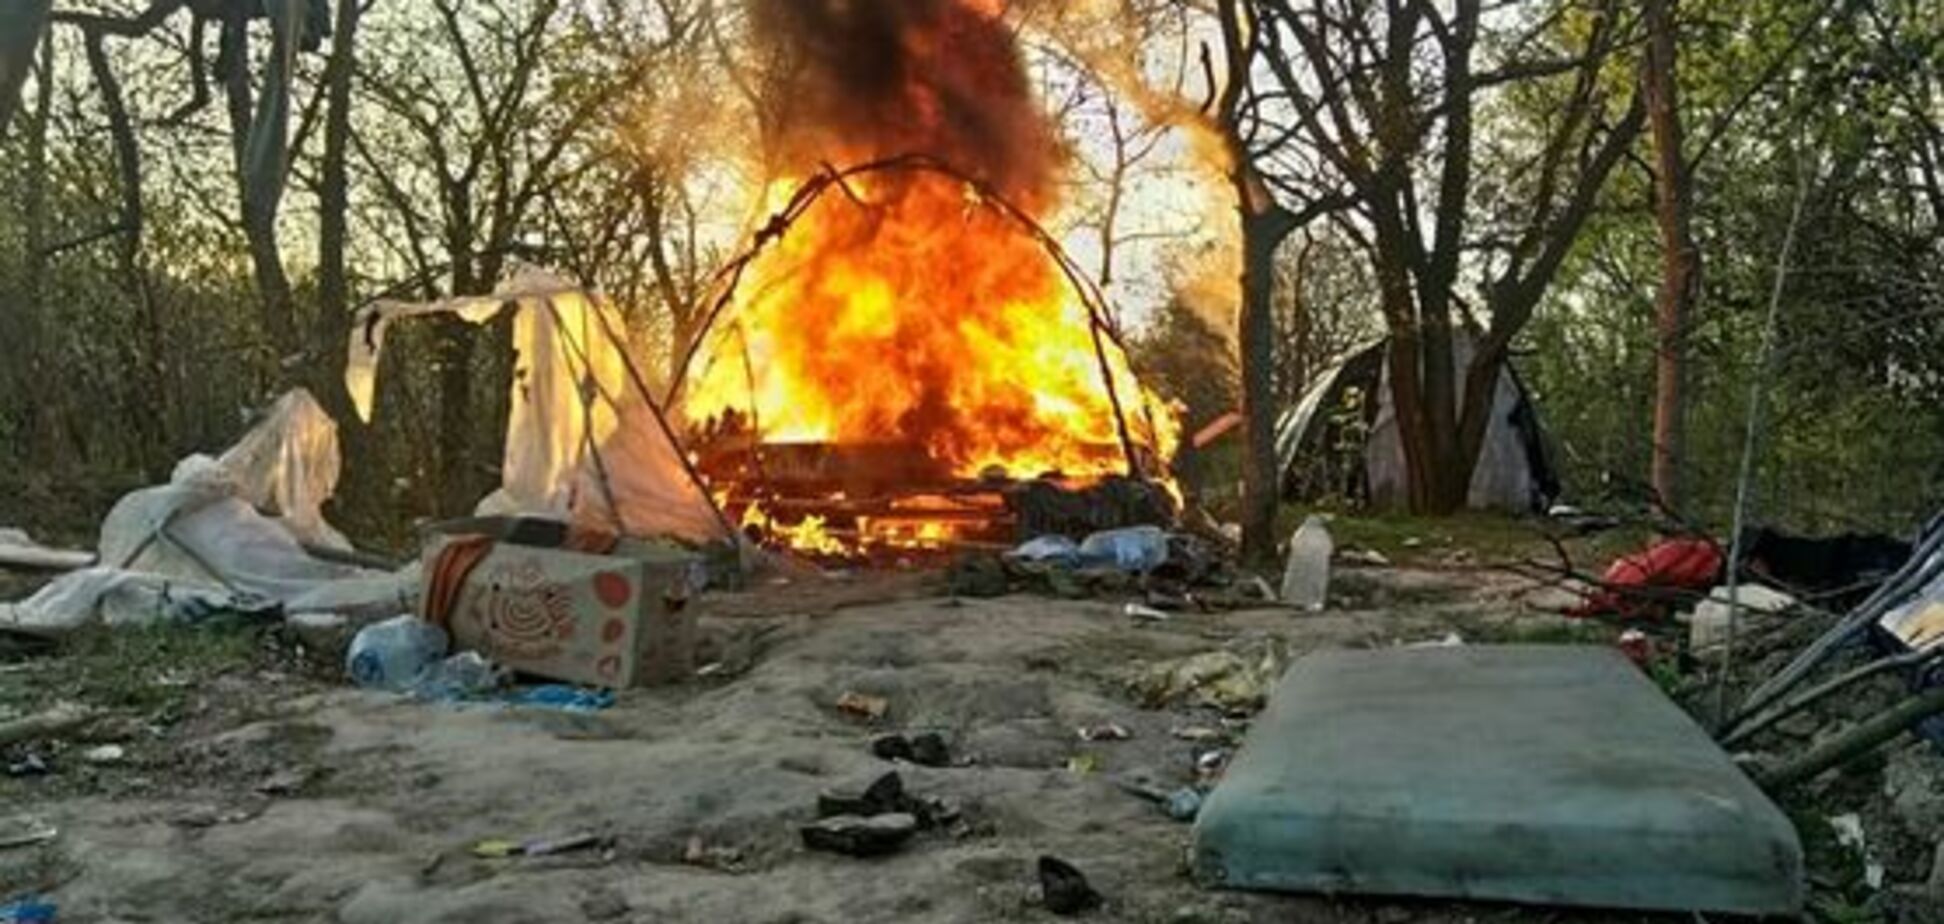 Загадочный поджог: под Львовом уничтожили лагерь ромов